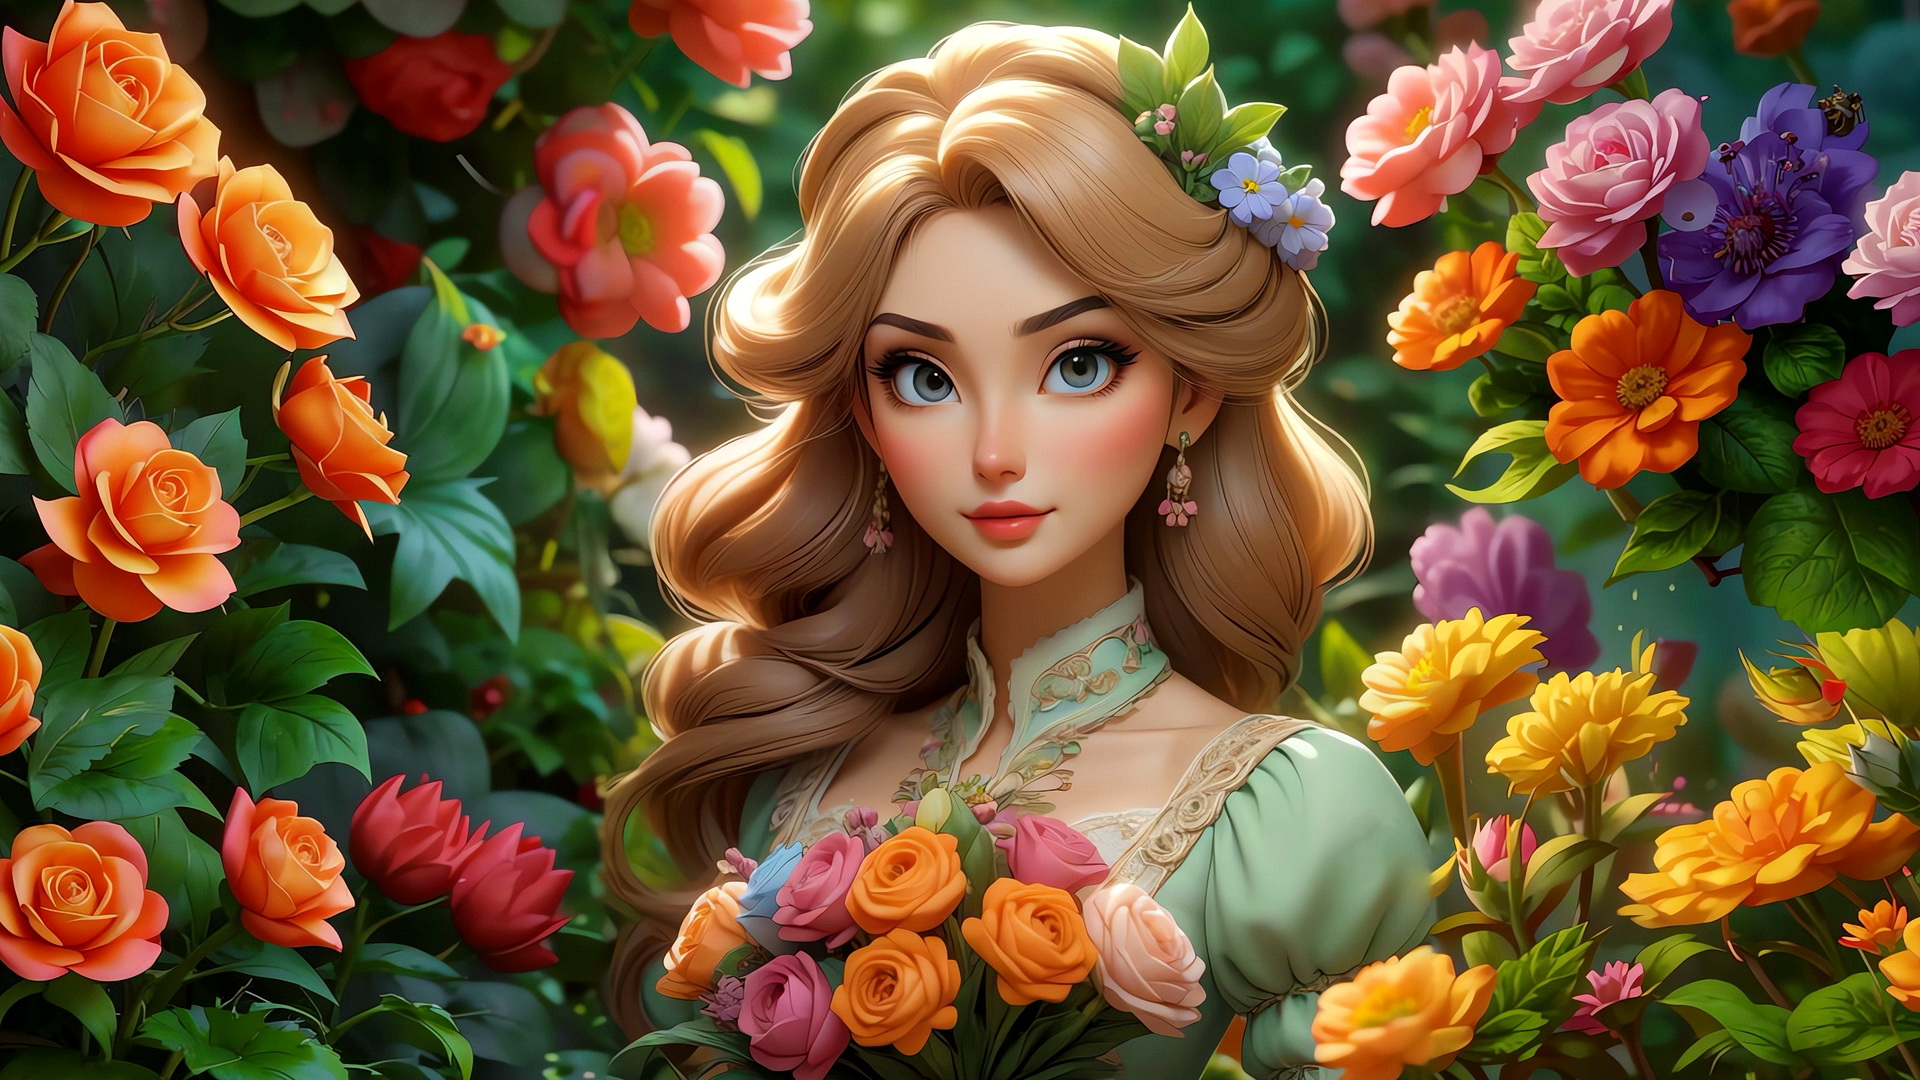 Бесплатное фото Портрет светловолосой девушки и цветы